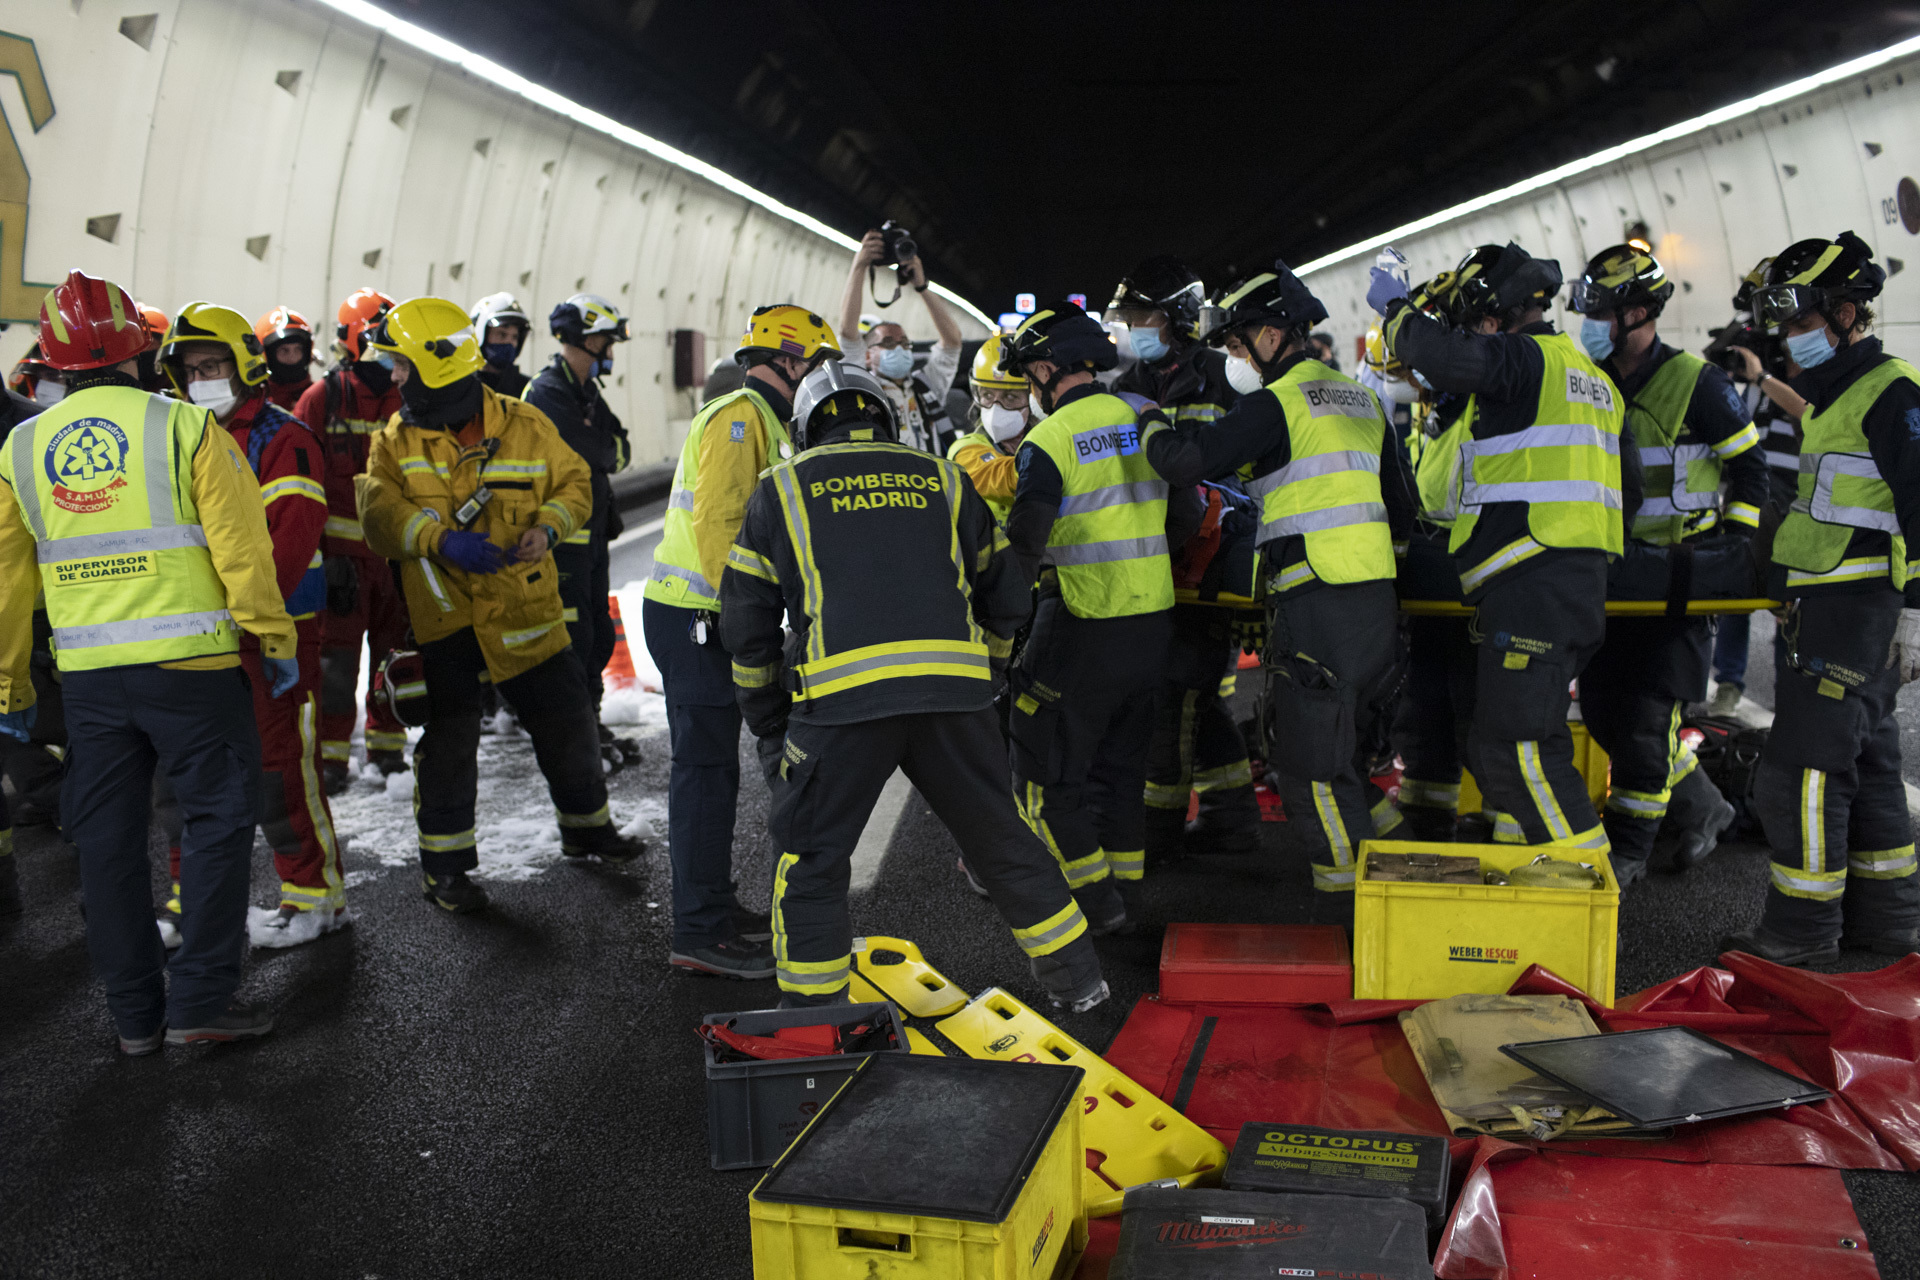 Bomberos de Madrid y personal sanitario atienden a los heridos en el simulacro.